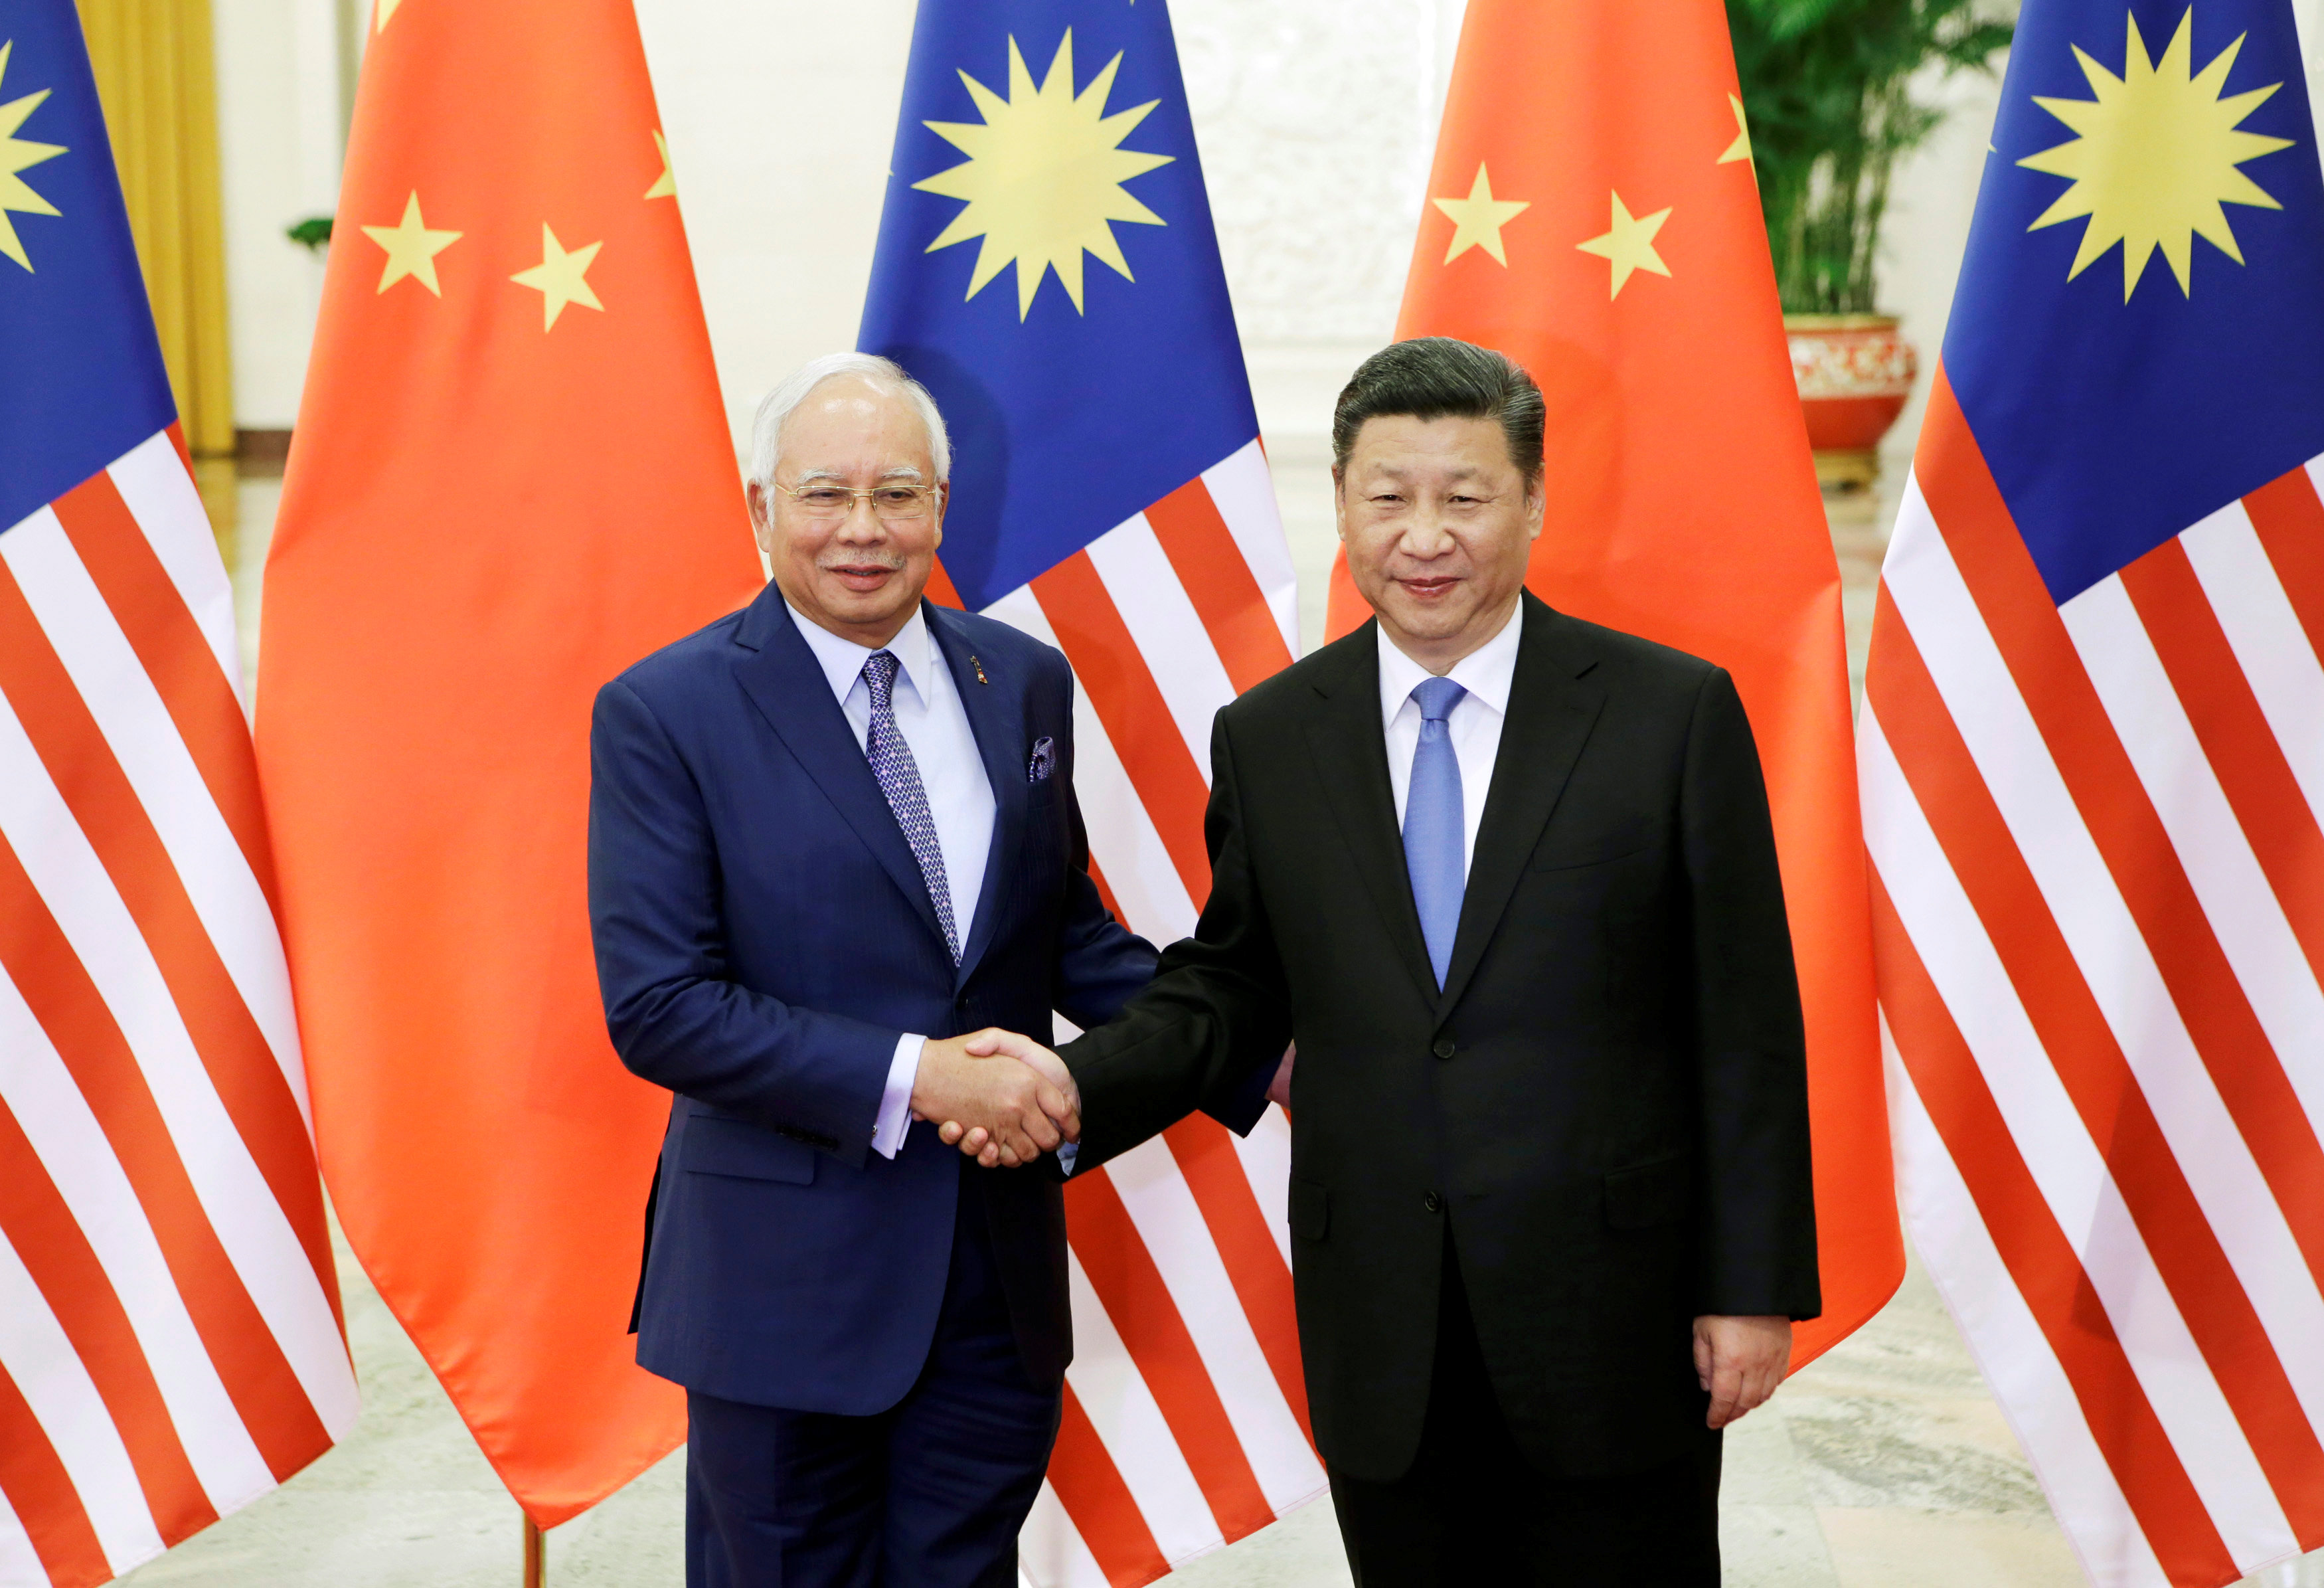 الرئيس الصينى يستقبل رئيس الوزراء الماليزى بمنتدى الطريق والحزام